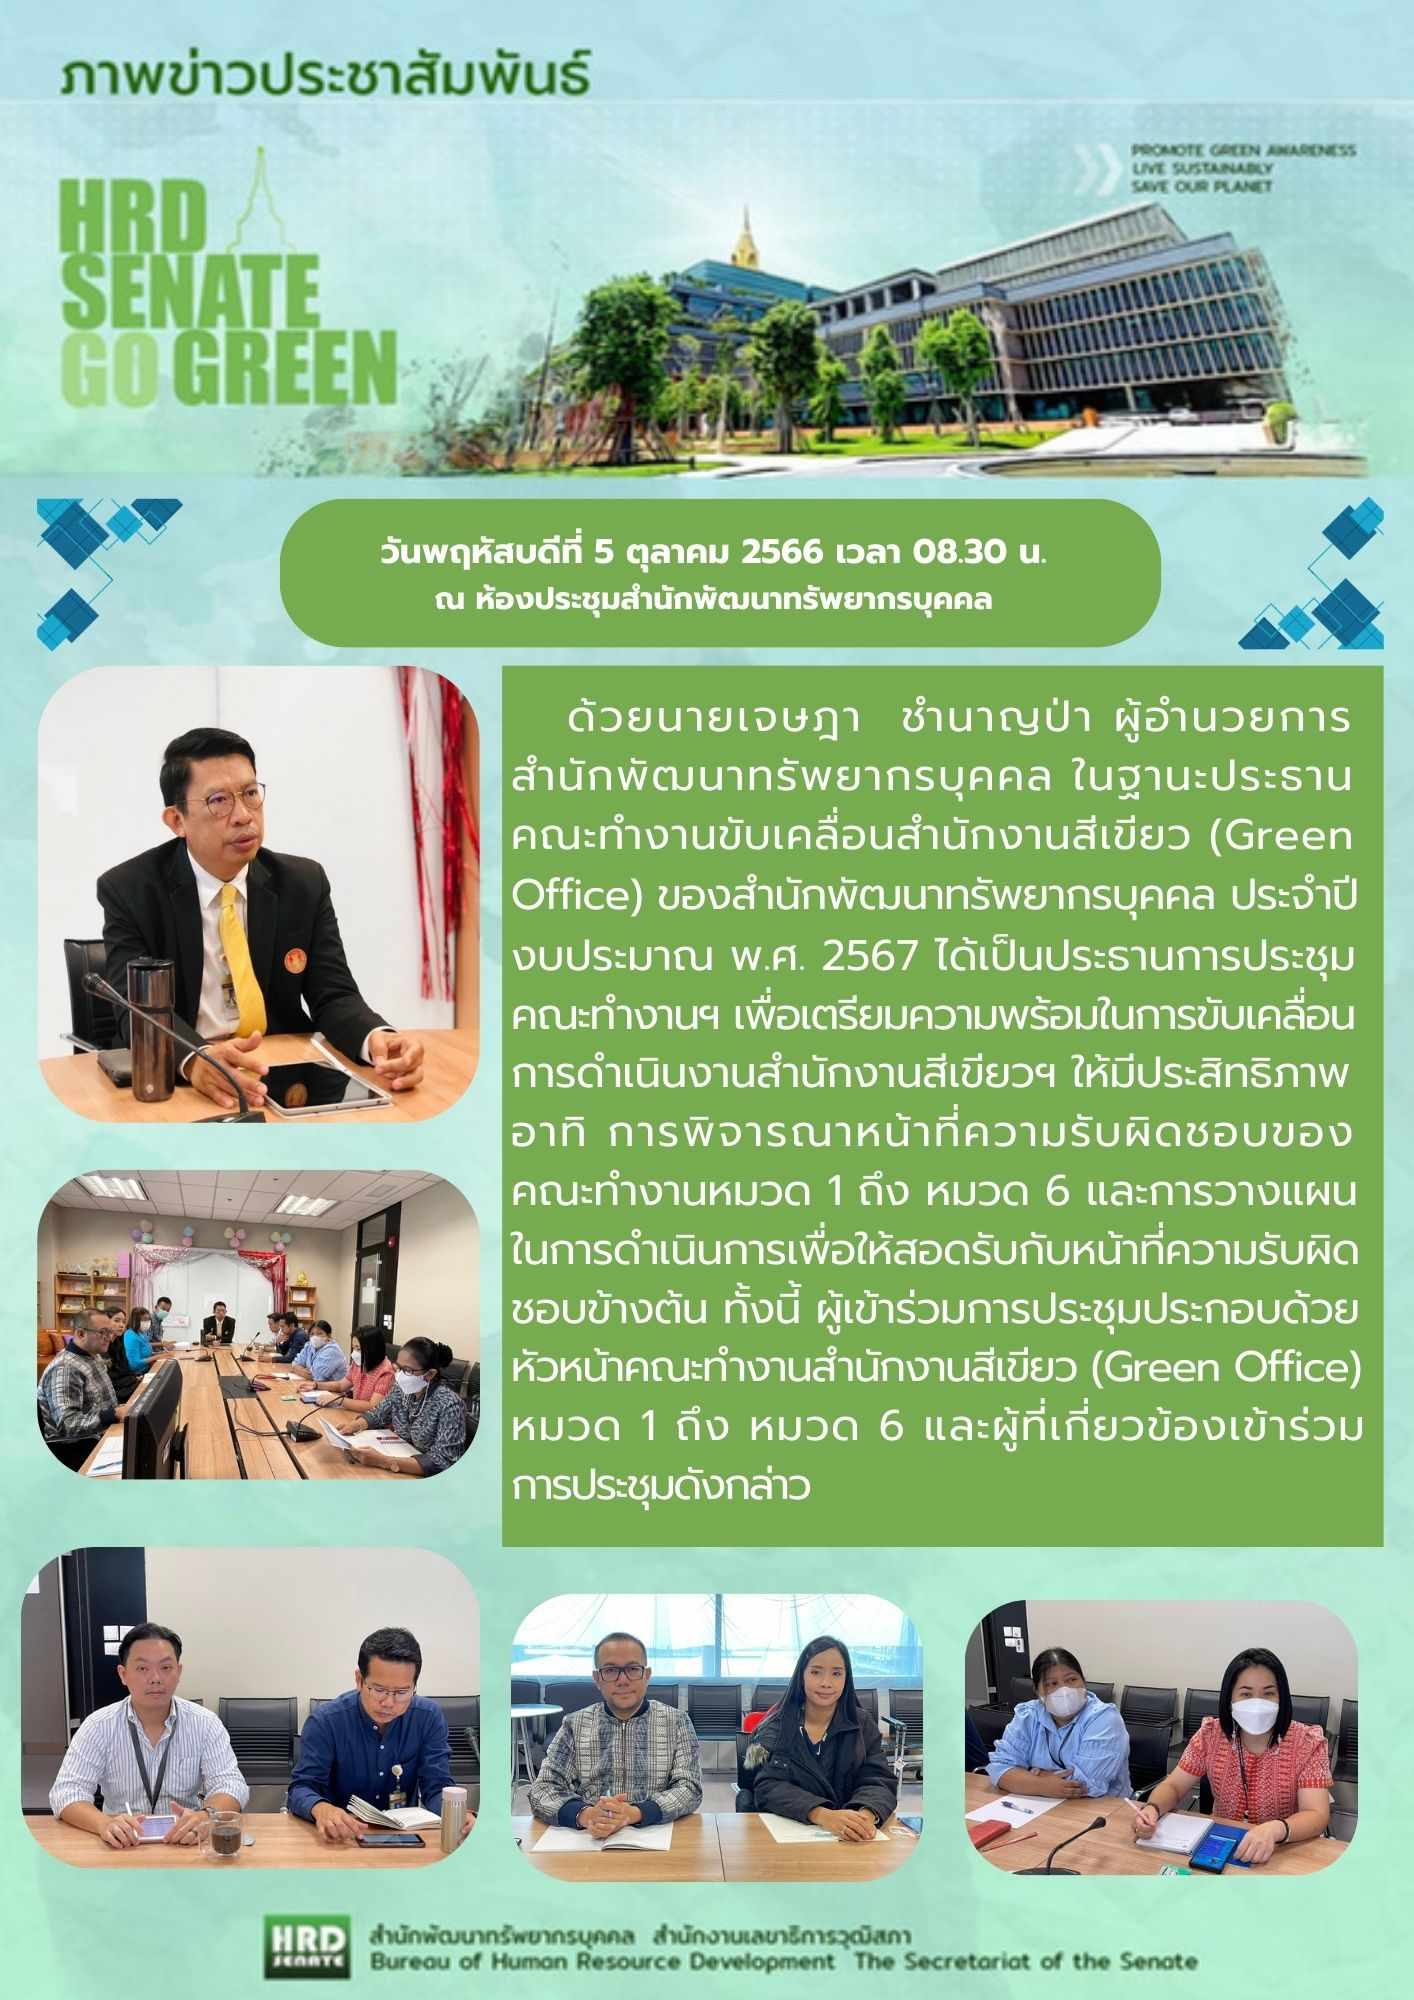 ประชุมคณะทำงานับเคลื่อนสำนักงานสีเขียว Green Office สำนักพัฒฯ 1/2567